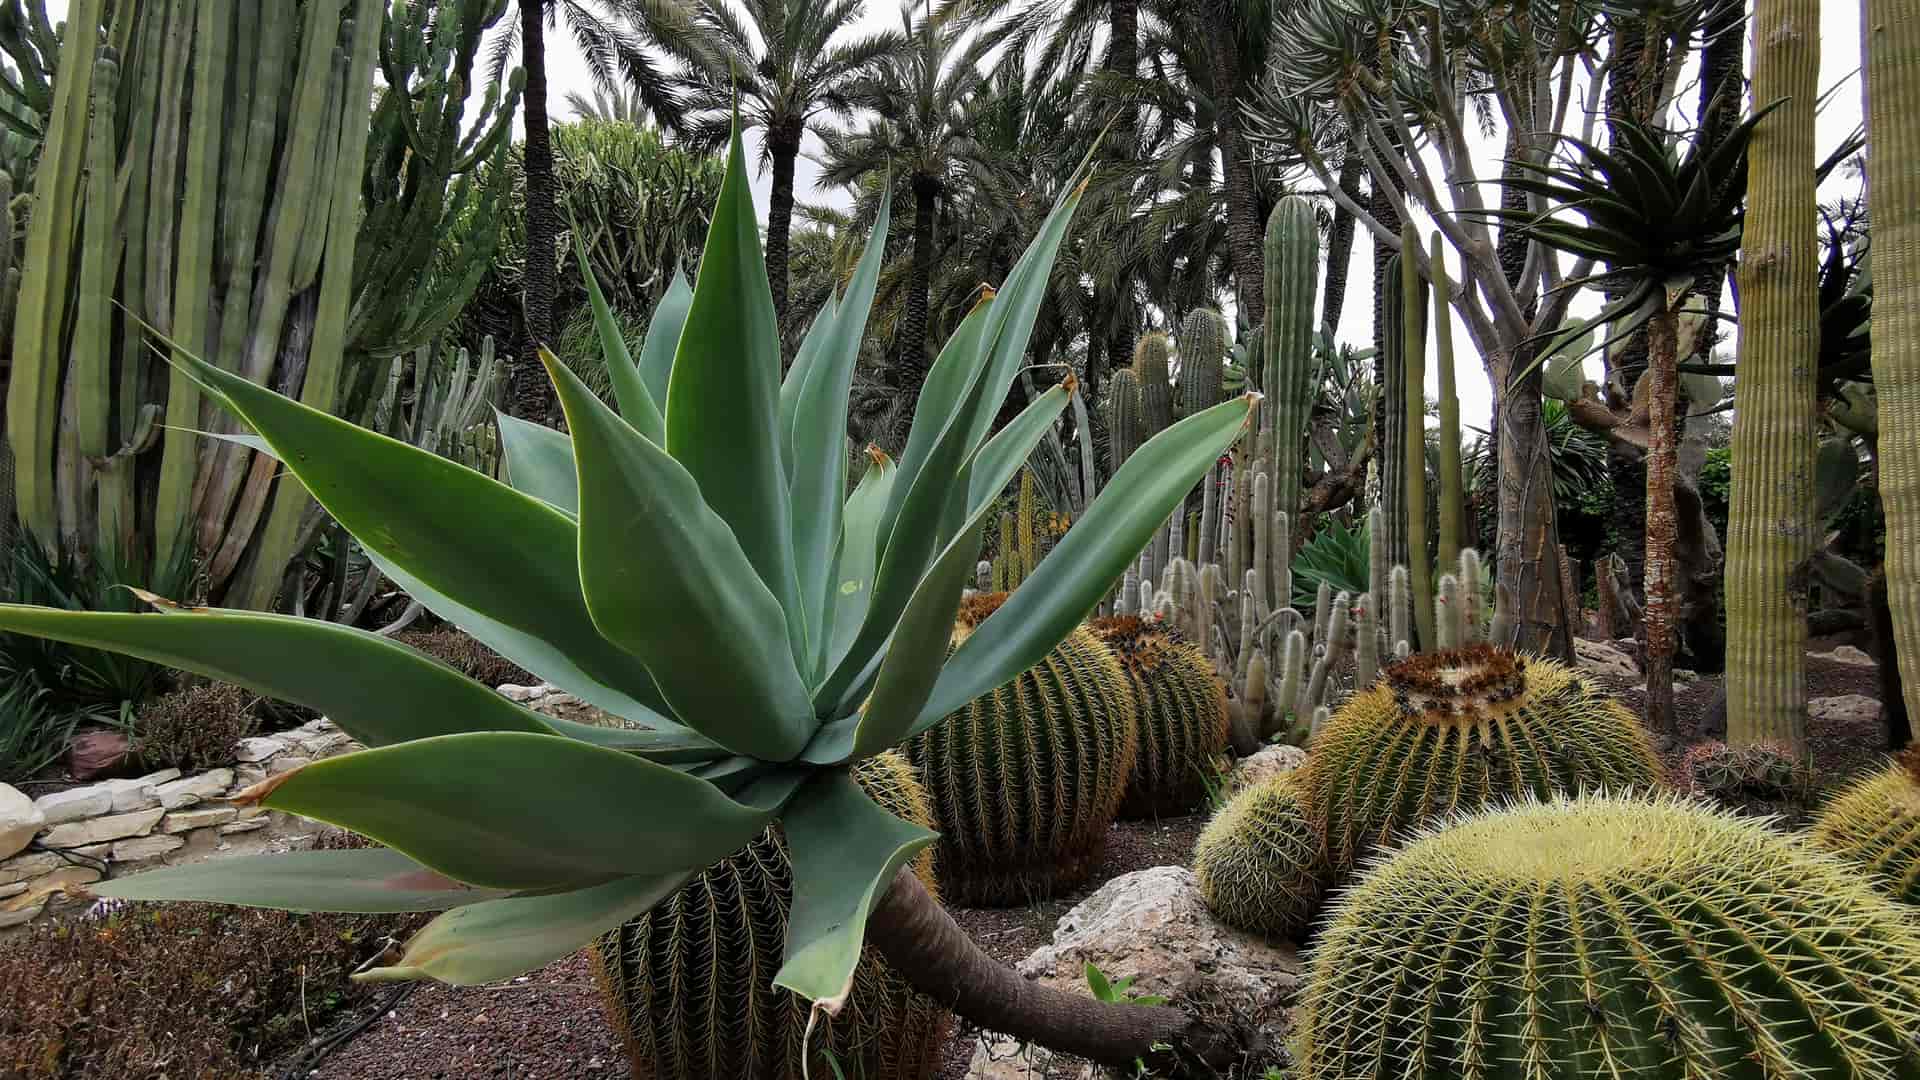 Hermoso jardín de cactus tropicales en Elche donde están disponibles los servicios telefónicos de yoigo